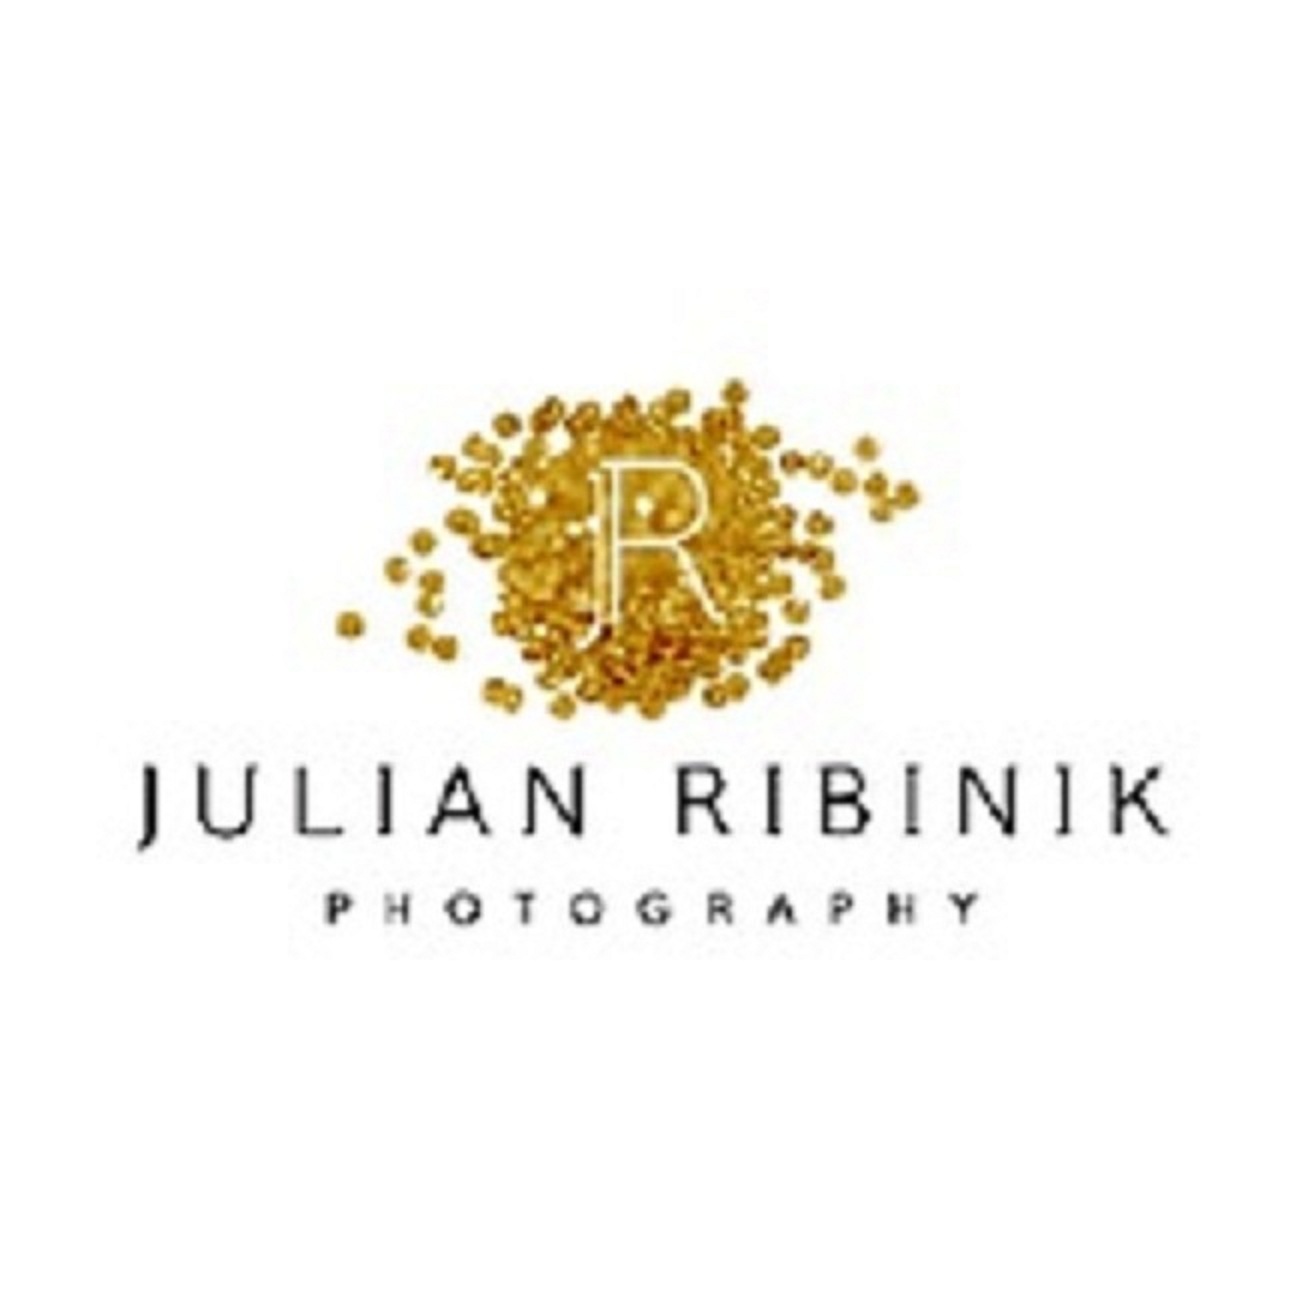 Julian Ribinik Photography